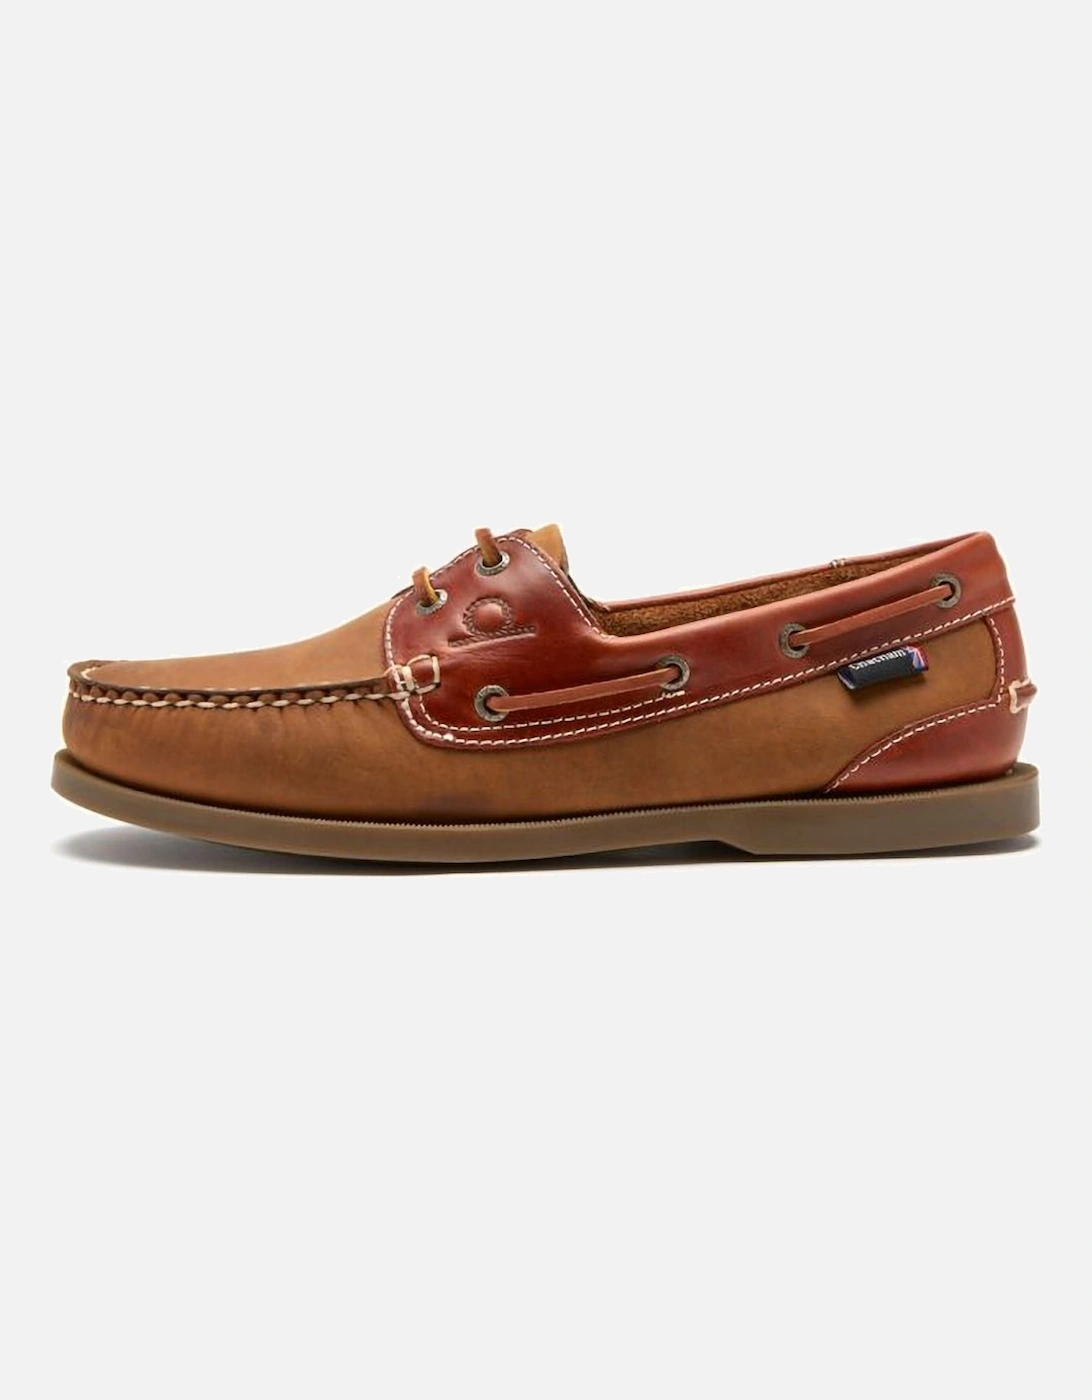 Bermuda Mens Boat Shoes